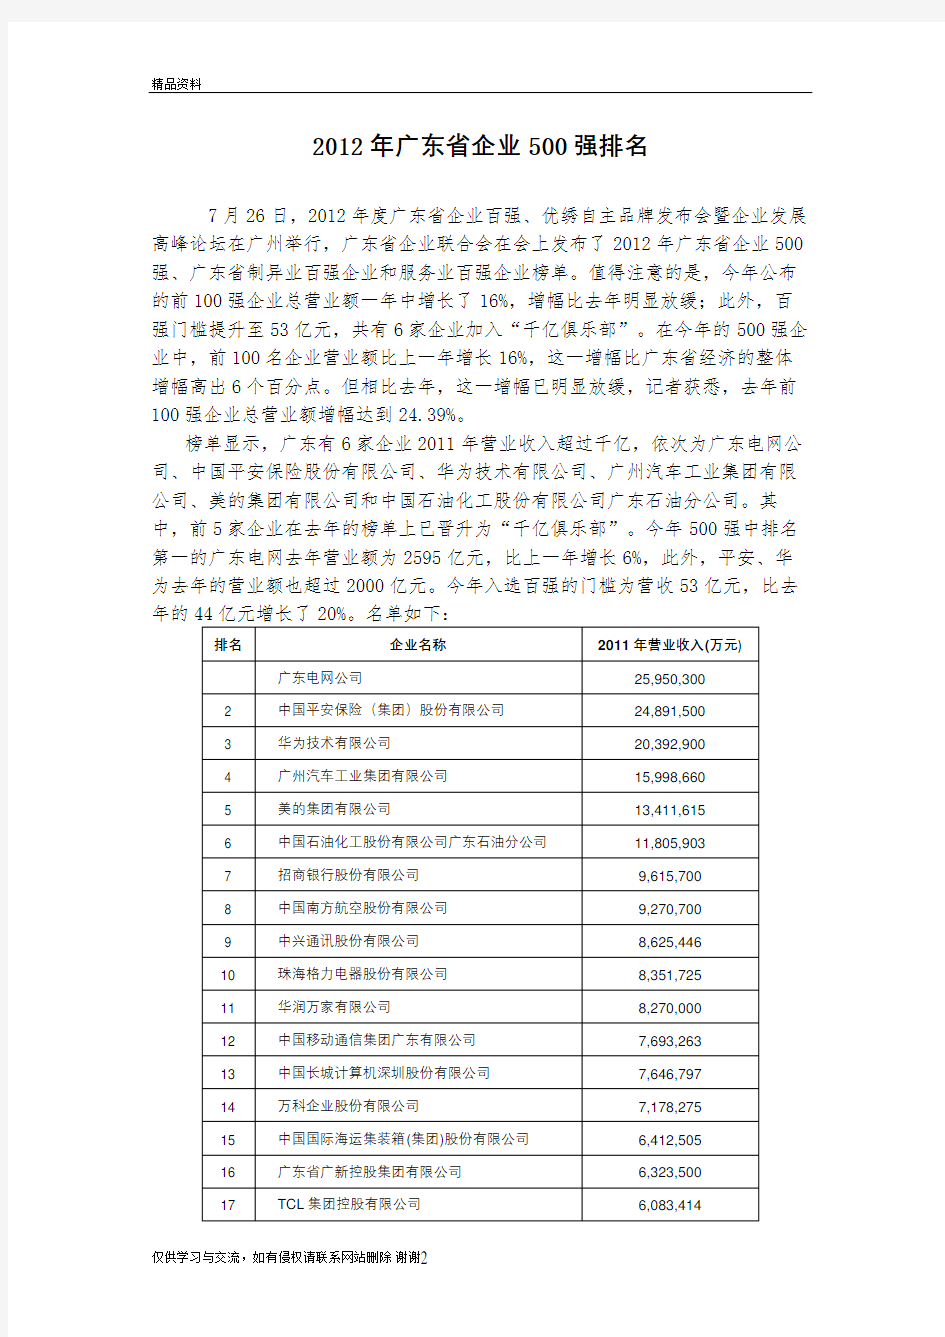 最新广东省企业500强排名汇总